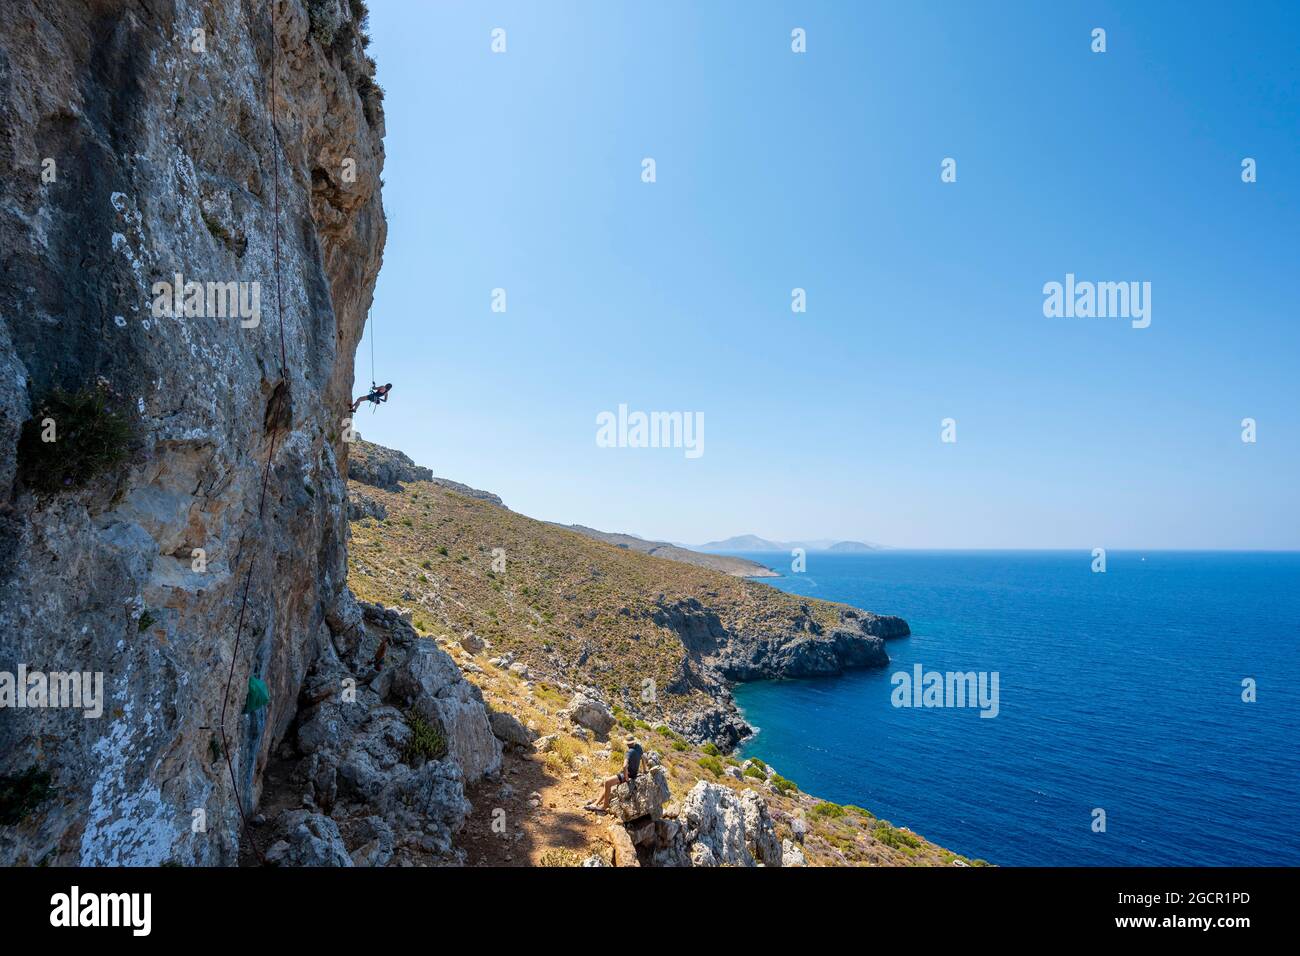 Klettern auf einer Felswand, Abseilen von Kletterern, Sportklettern, Kalymnos, Dodekanes, Griechenland Stockfoto